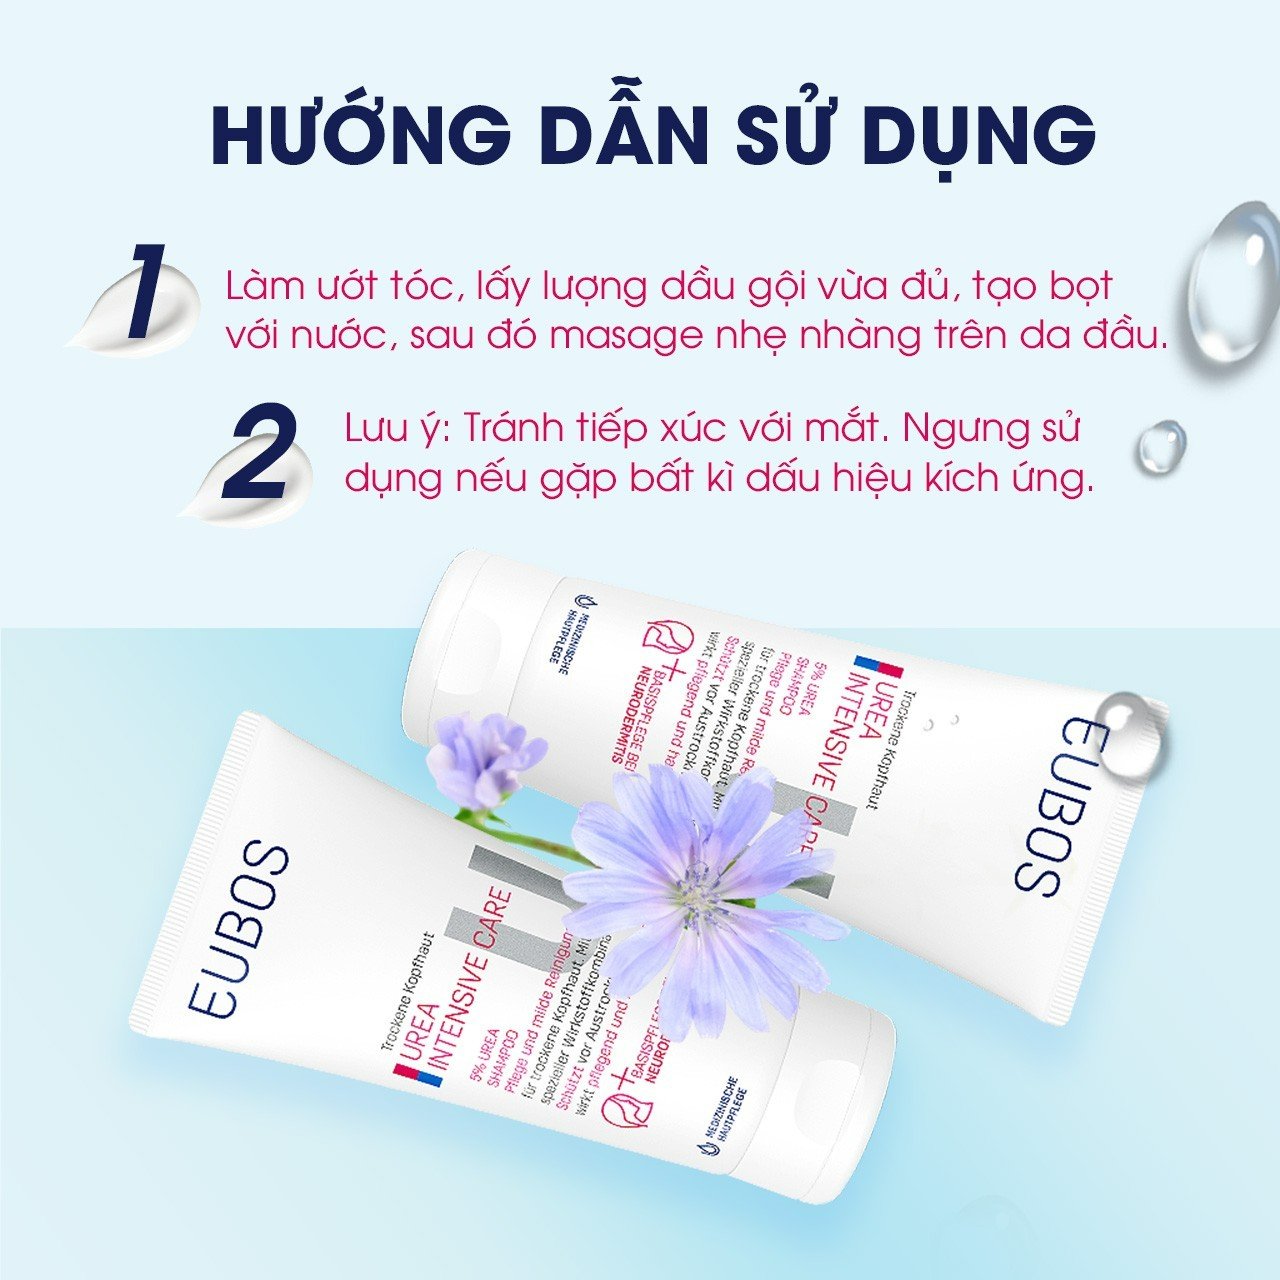 Dầu Gội Cho Da Khô Vẩy Nến, Nấm Eubos Urea 5% Shampoo (200ml)